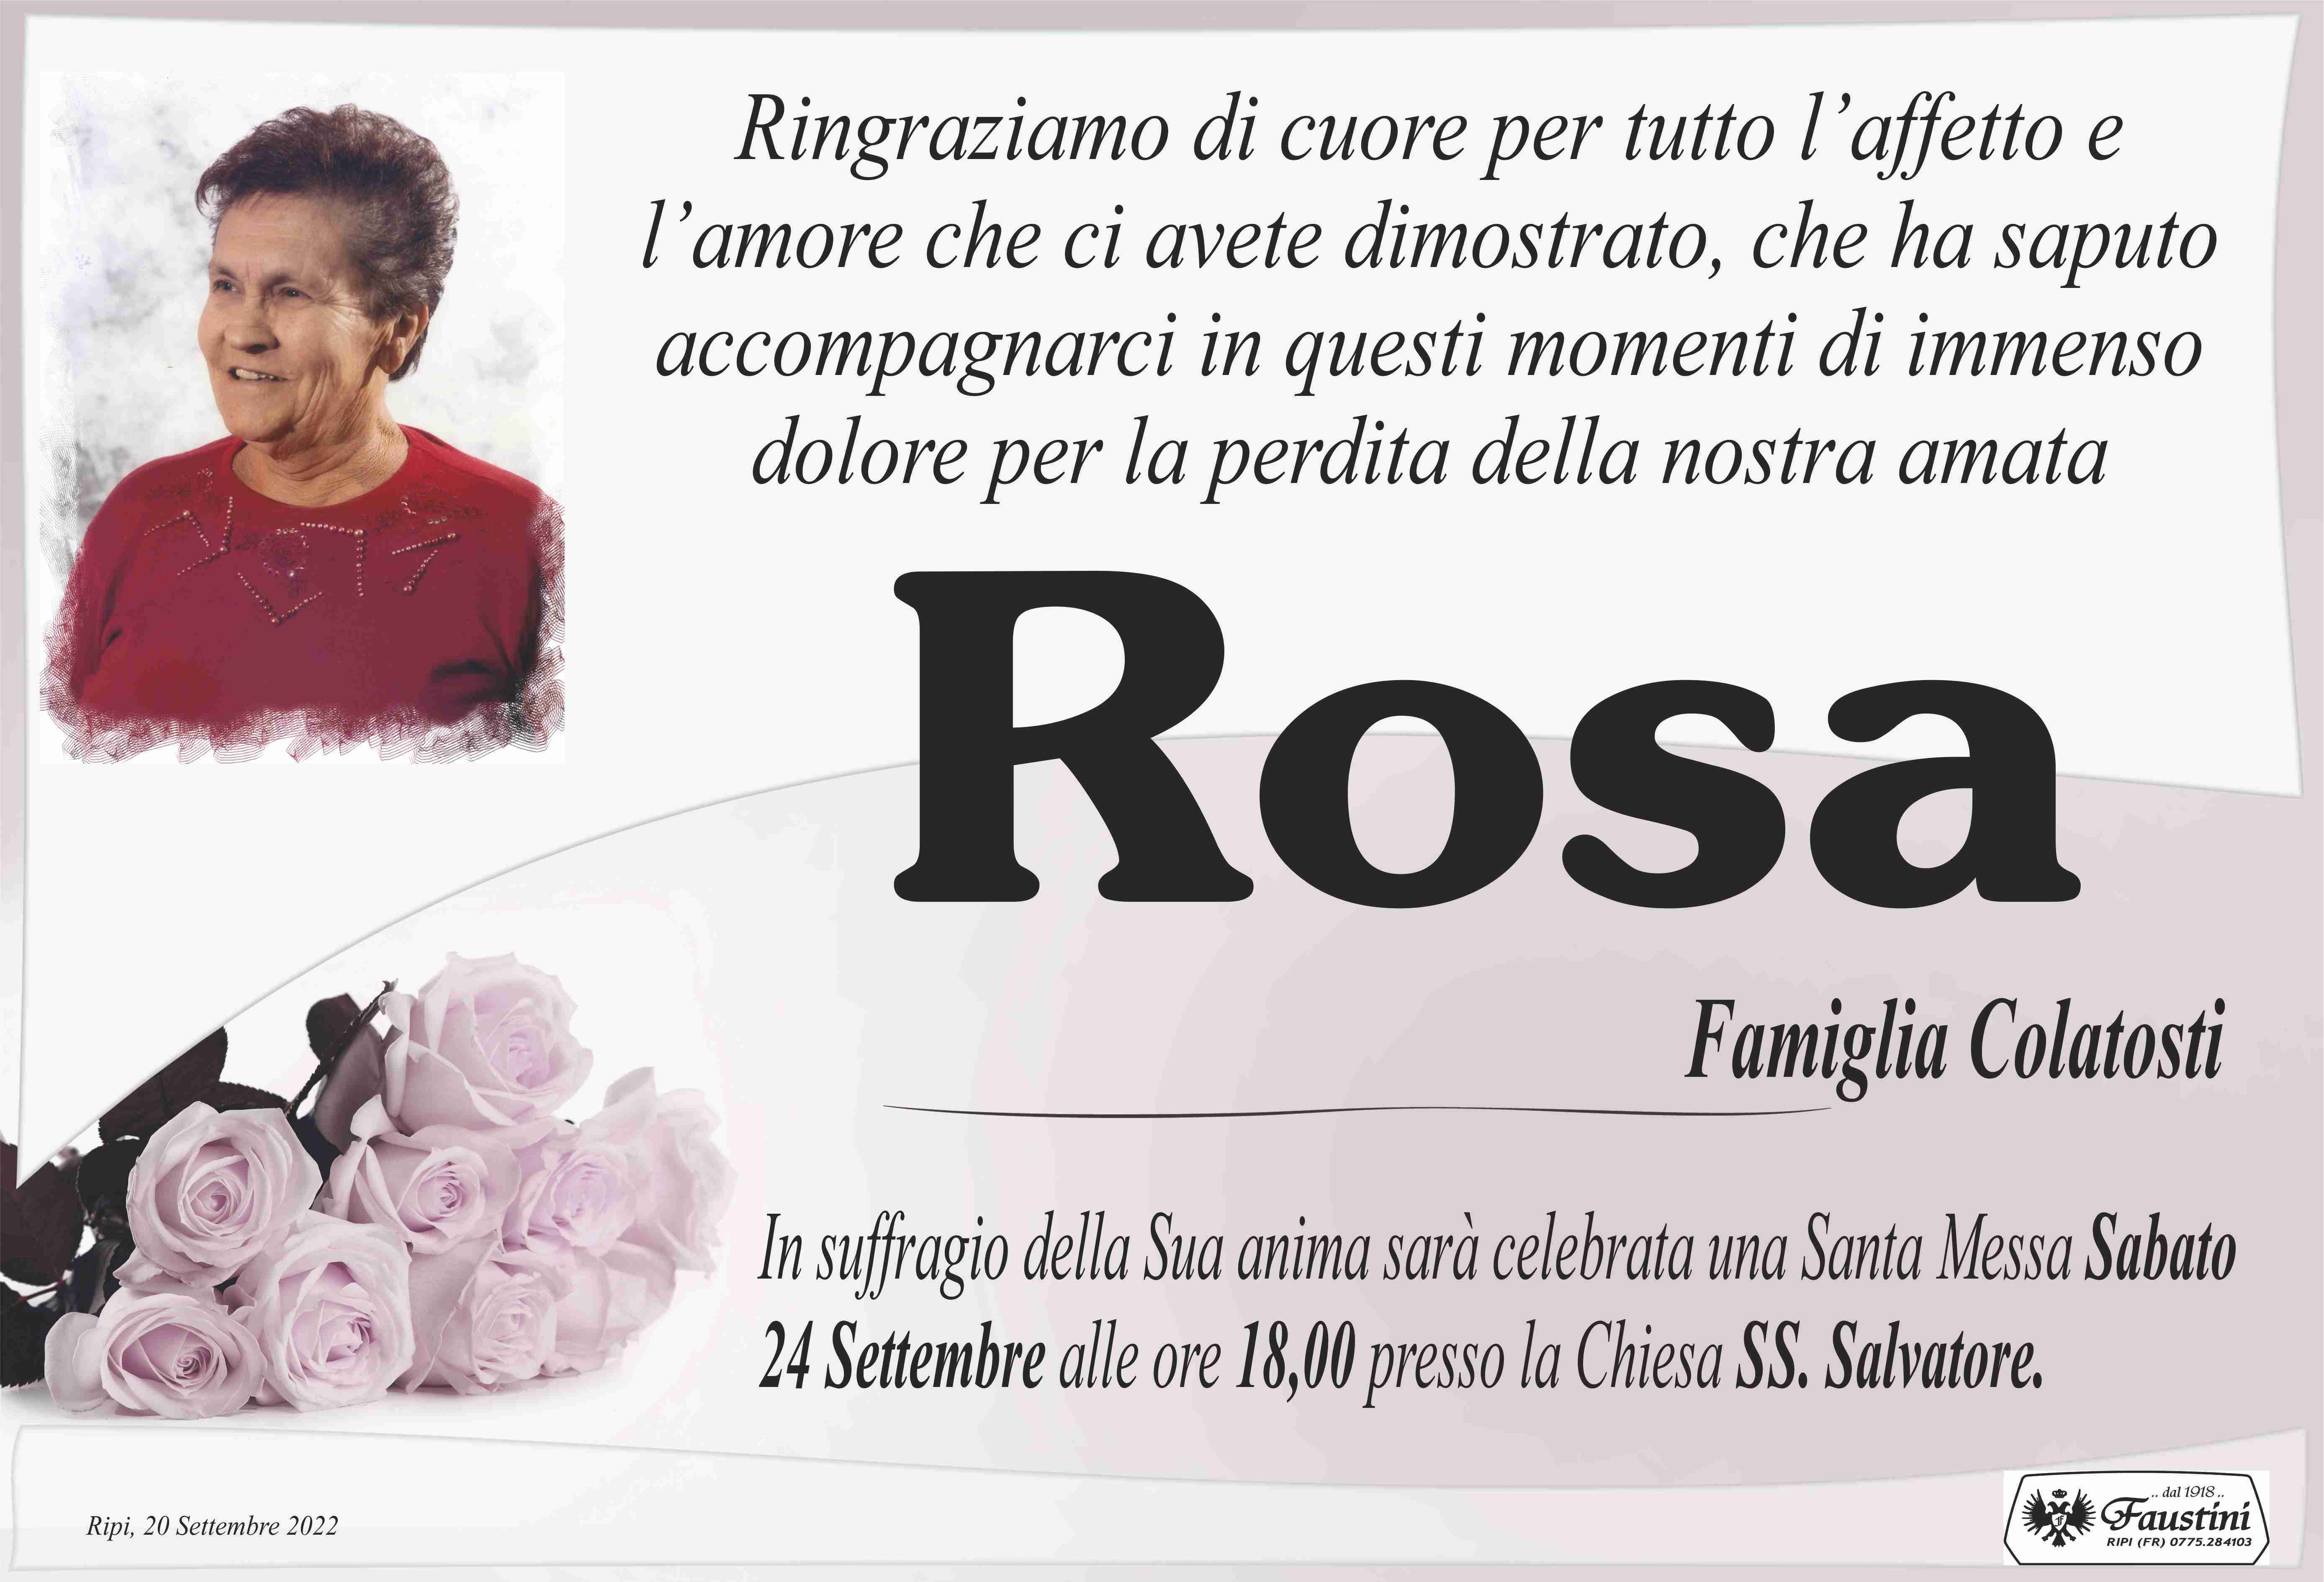 Rosa Faustini